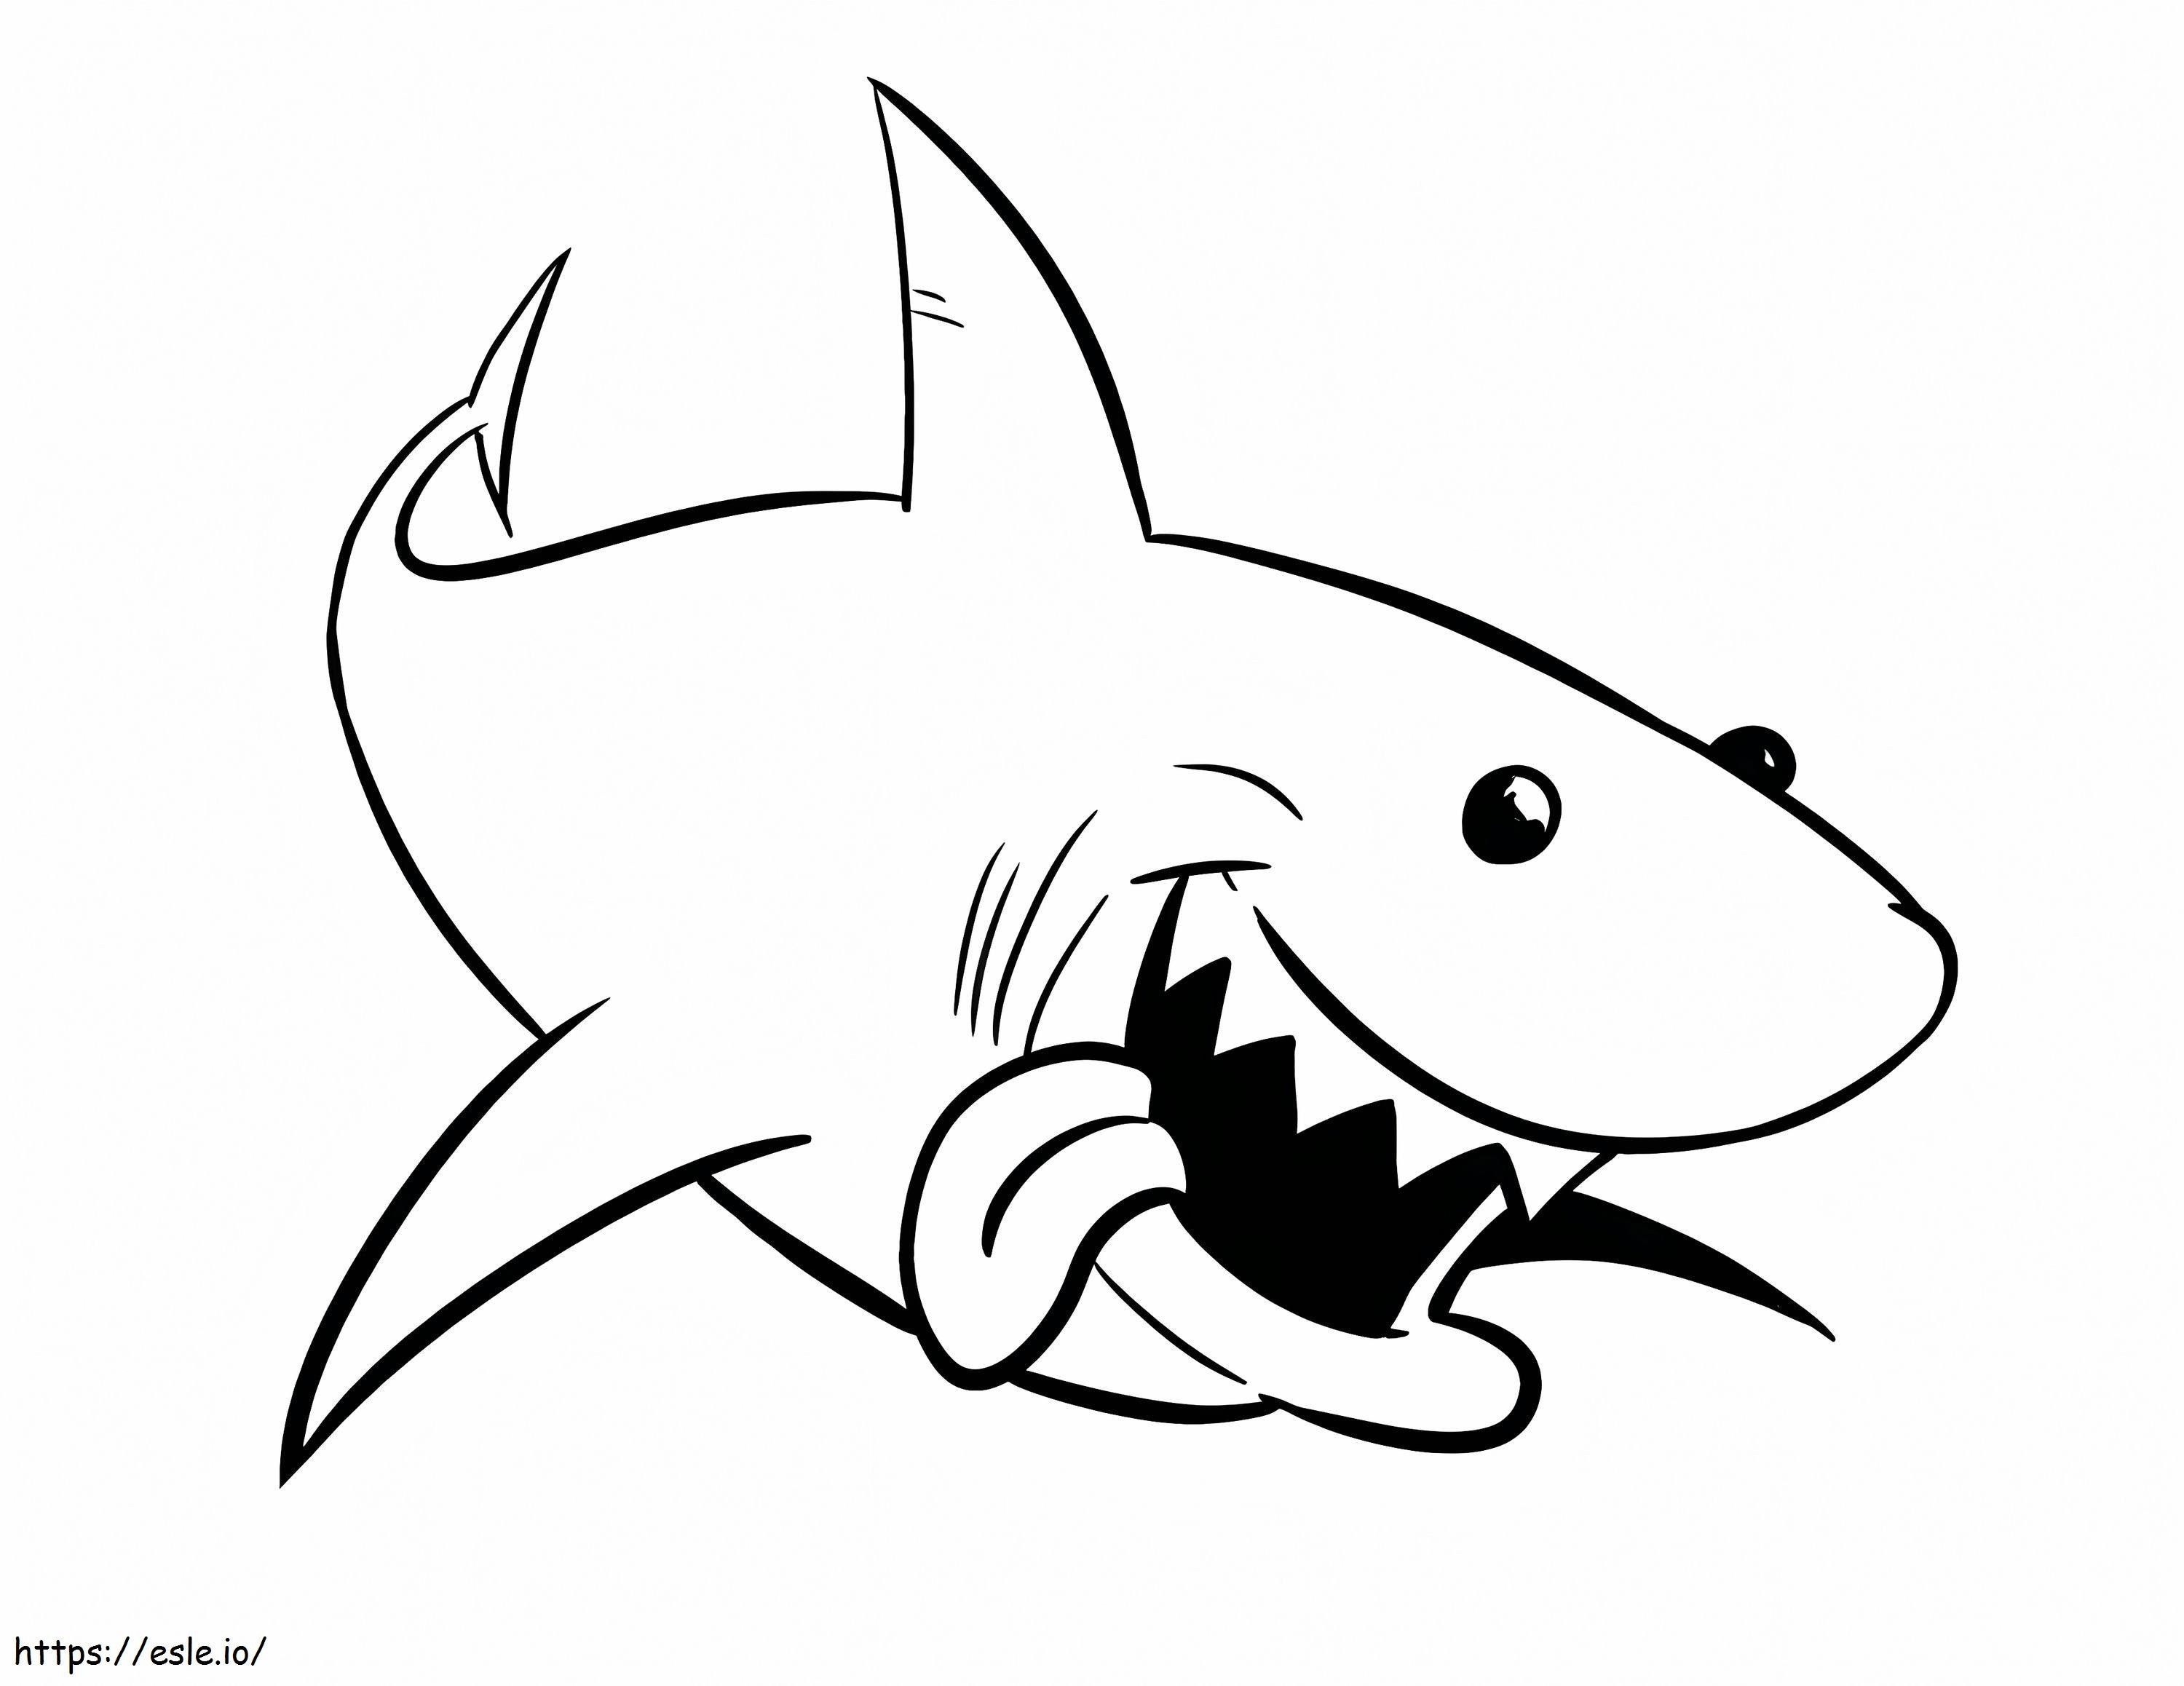 1541378982 Compleet D792570 Bull Shark Grote Witte Haai Nieuwe Bull Shark Tekening van Great White Shark Kleurplaten Antieke Bull Shark Kleurplaten kleurplaat kleurplaat